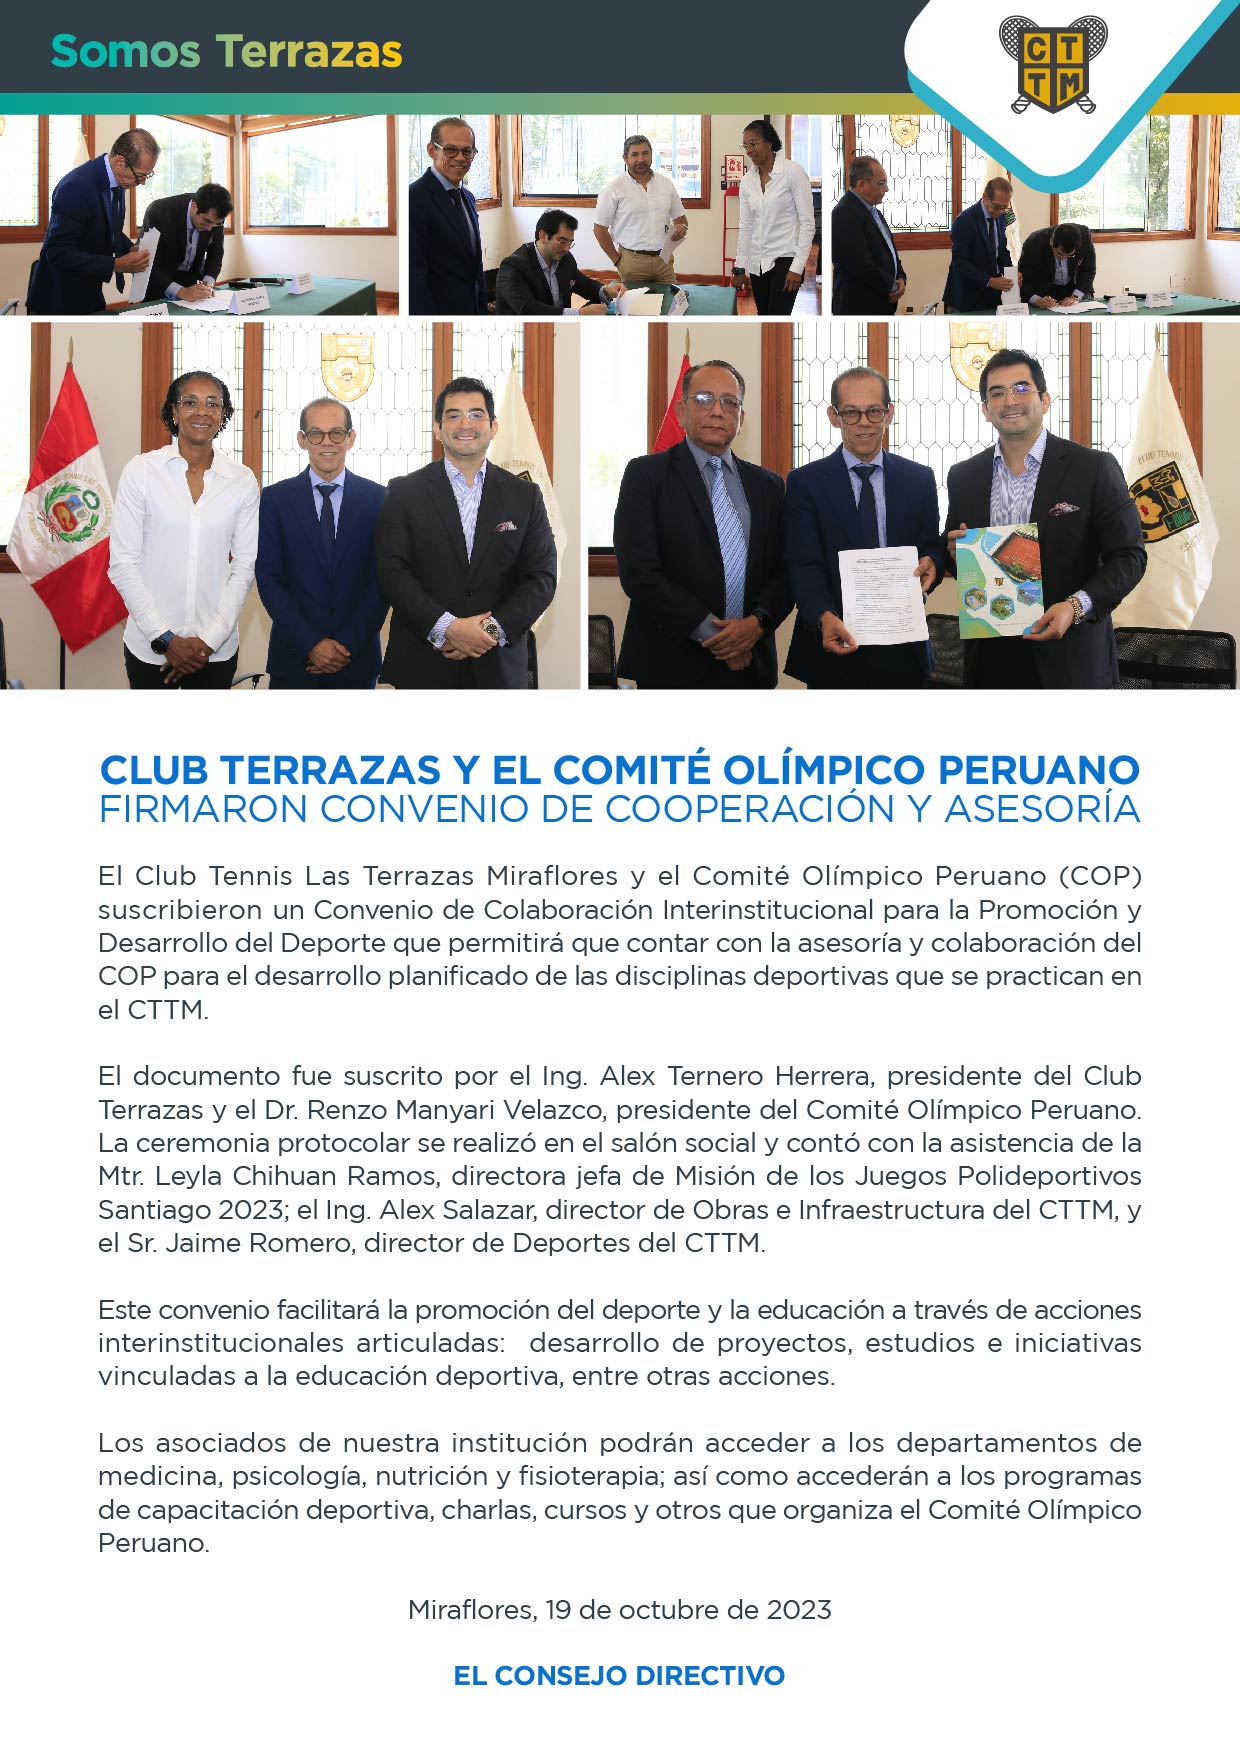 CLUB TERRAZAS Y EL COMITÉ OLÍMPICO PERUANO FIRMARON CONVENIO DE COOPERACIÓN Y ASESORÍA